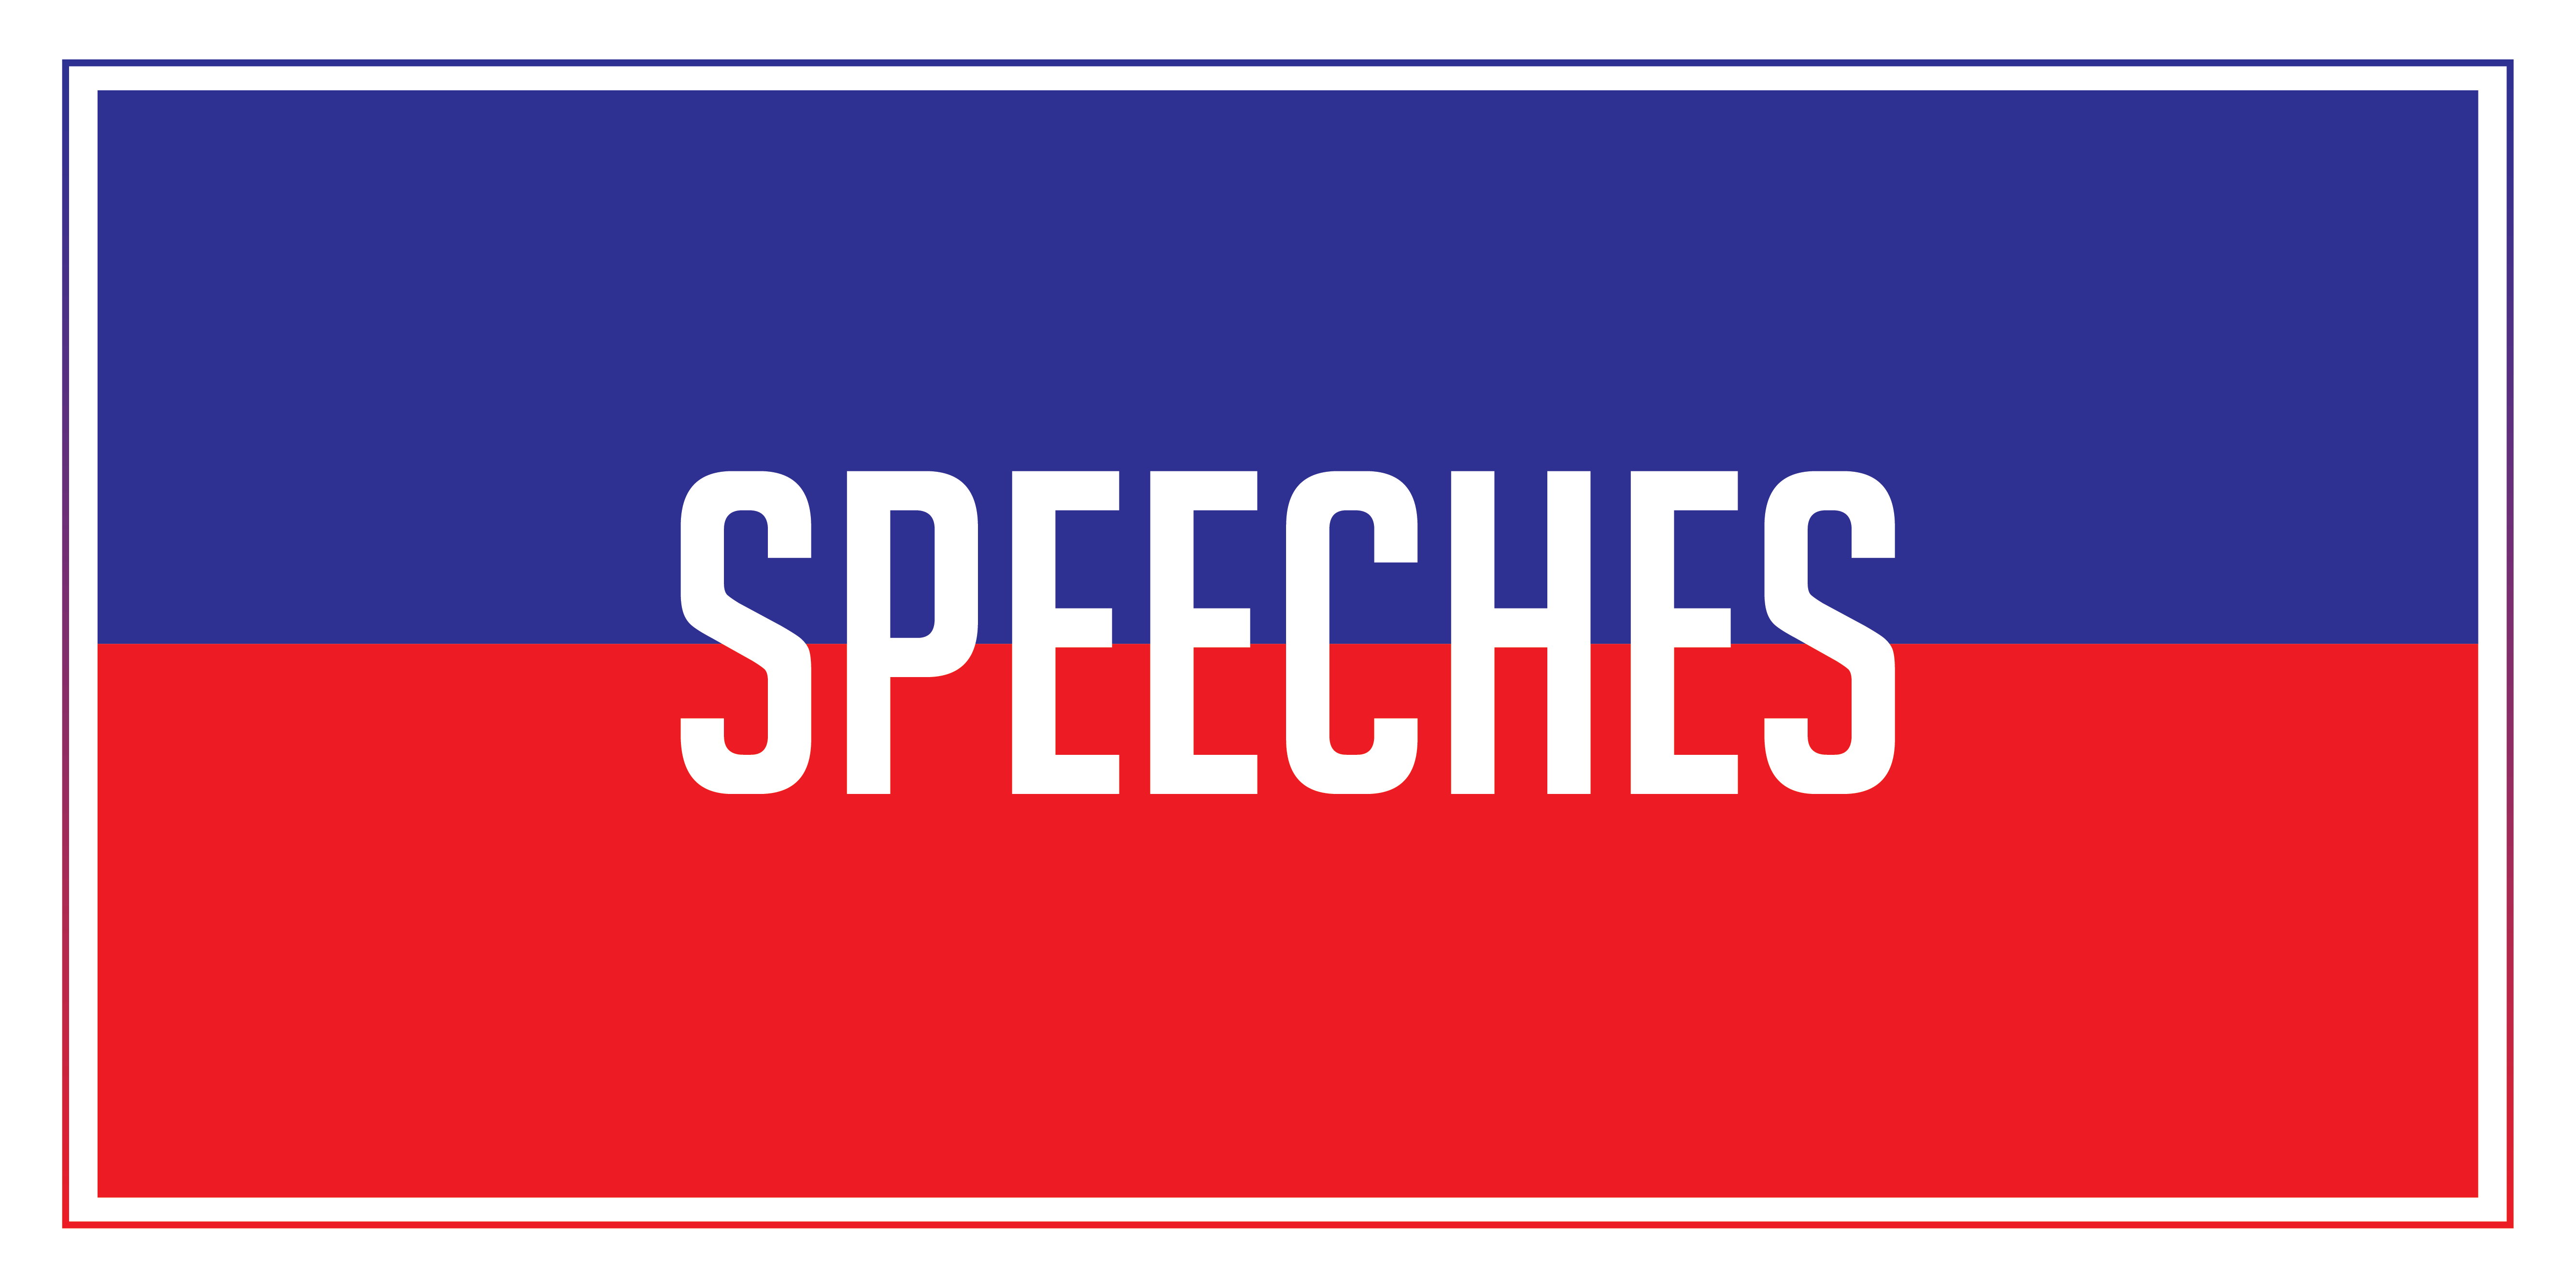 speeches